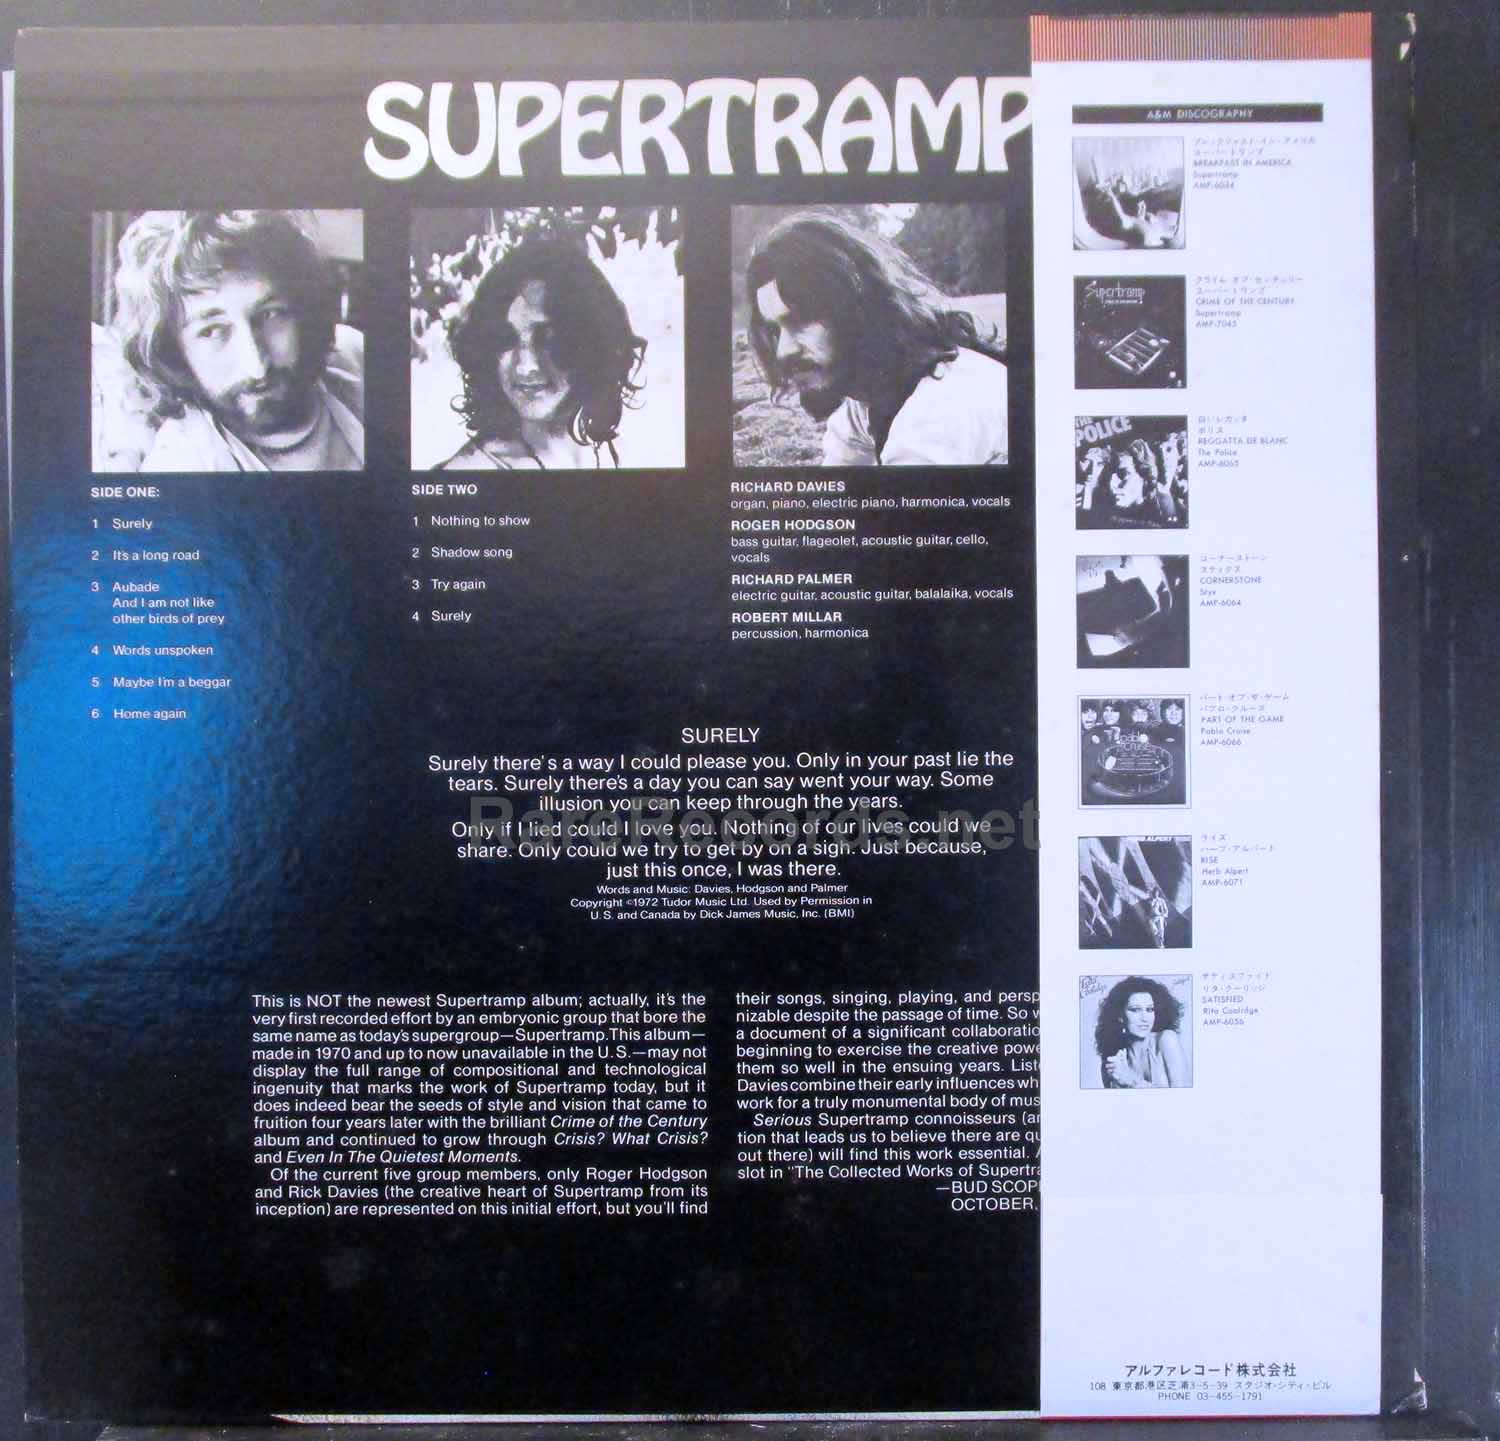 Supertramp – Supertramp 1979 Japan promotional LP with obi